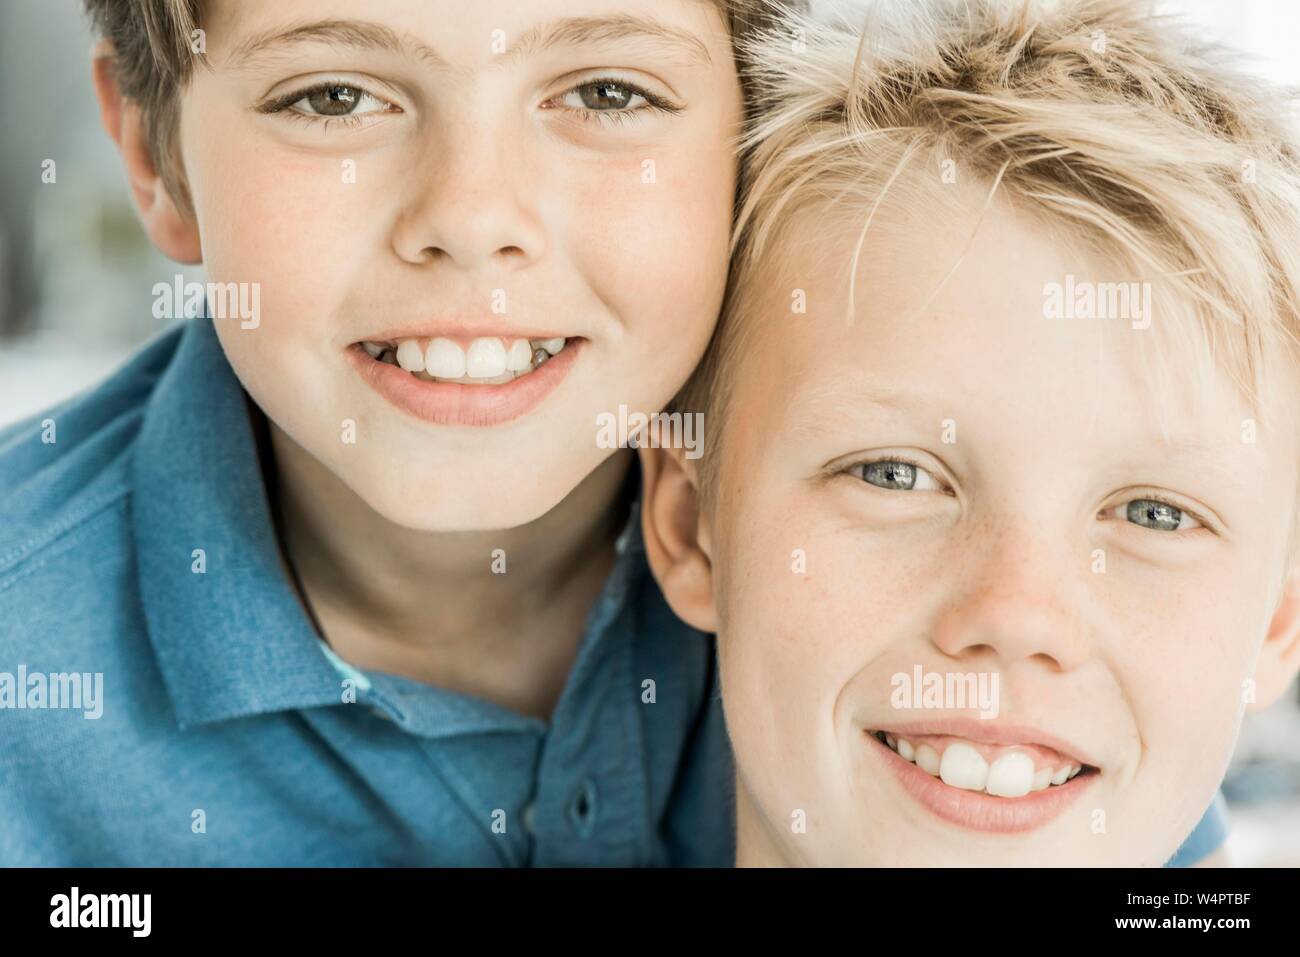 Zwei Jungen, Freunde, 10 Jahre alt, suche lächelnd in die Kamera, Portraits, Deutschland Stockfoto